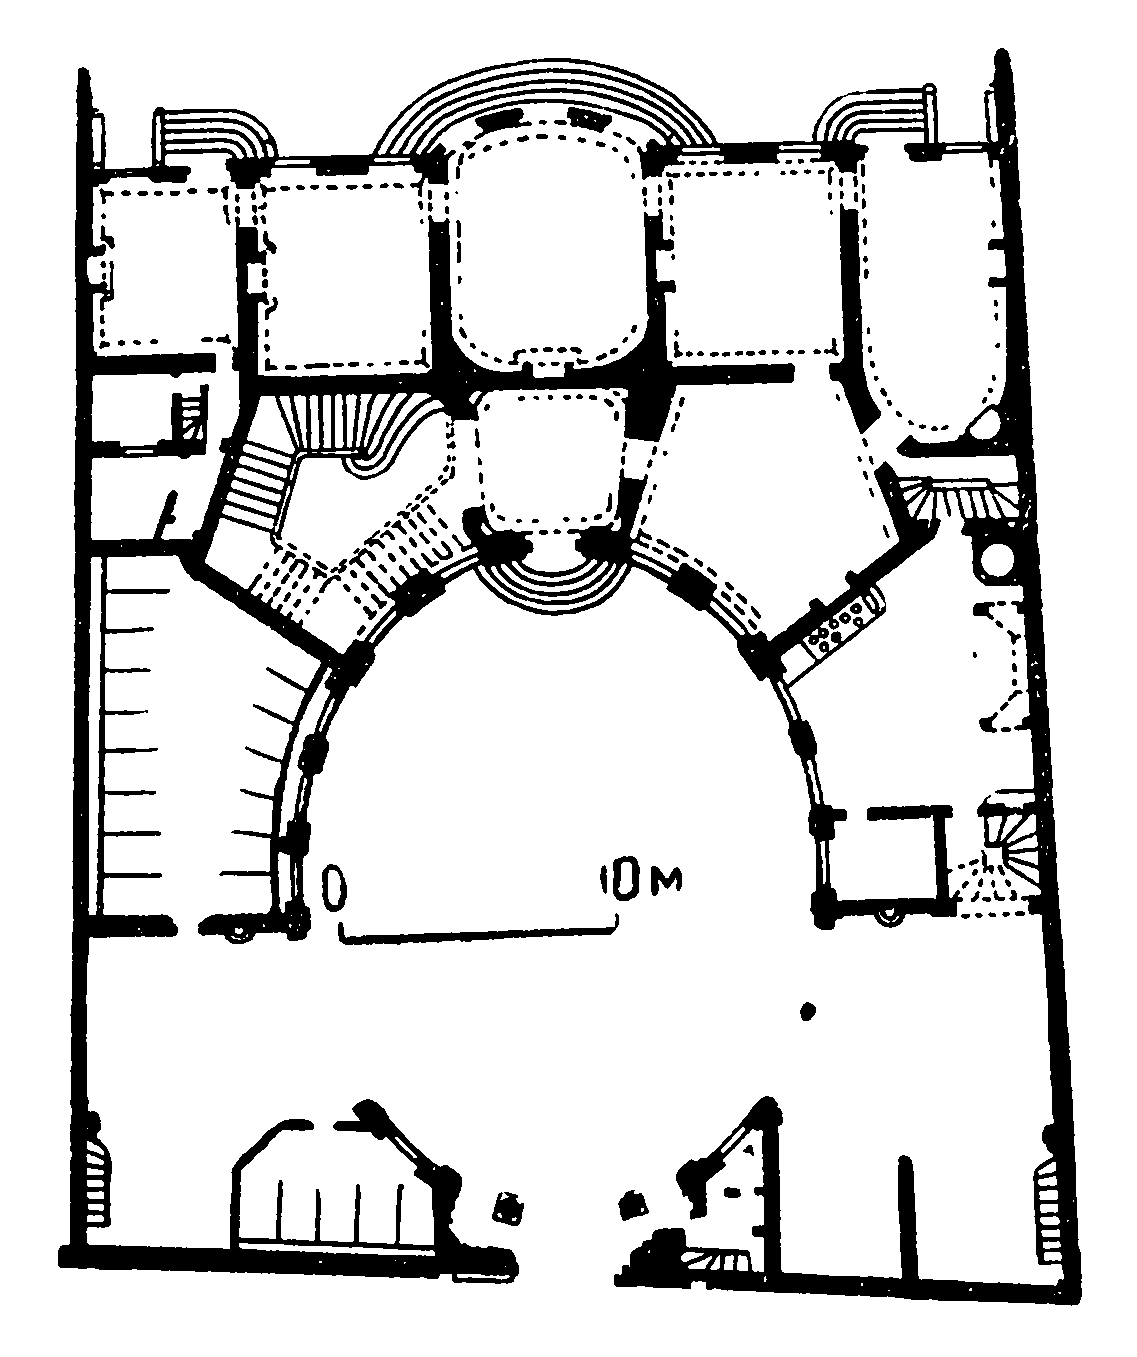 69. Париж. Отель Амело, 1710—1713 гг., Ж. Боффран. План и разрез